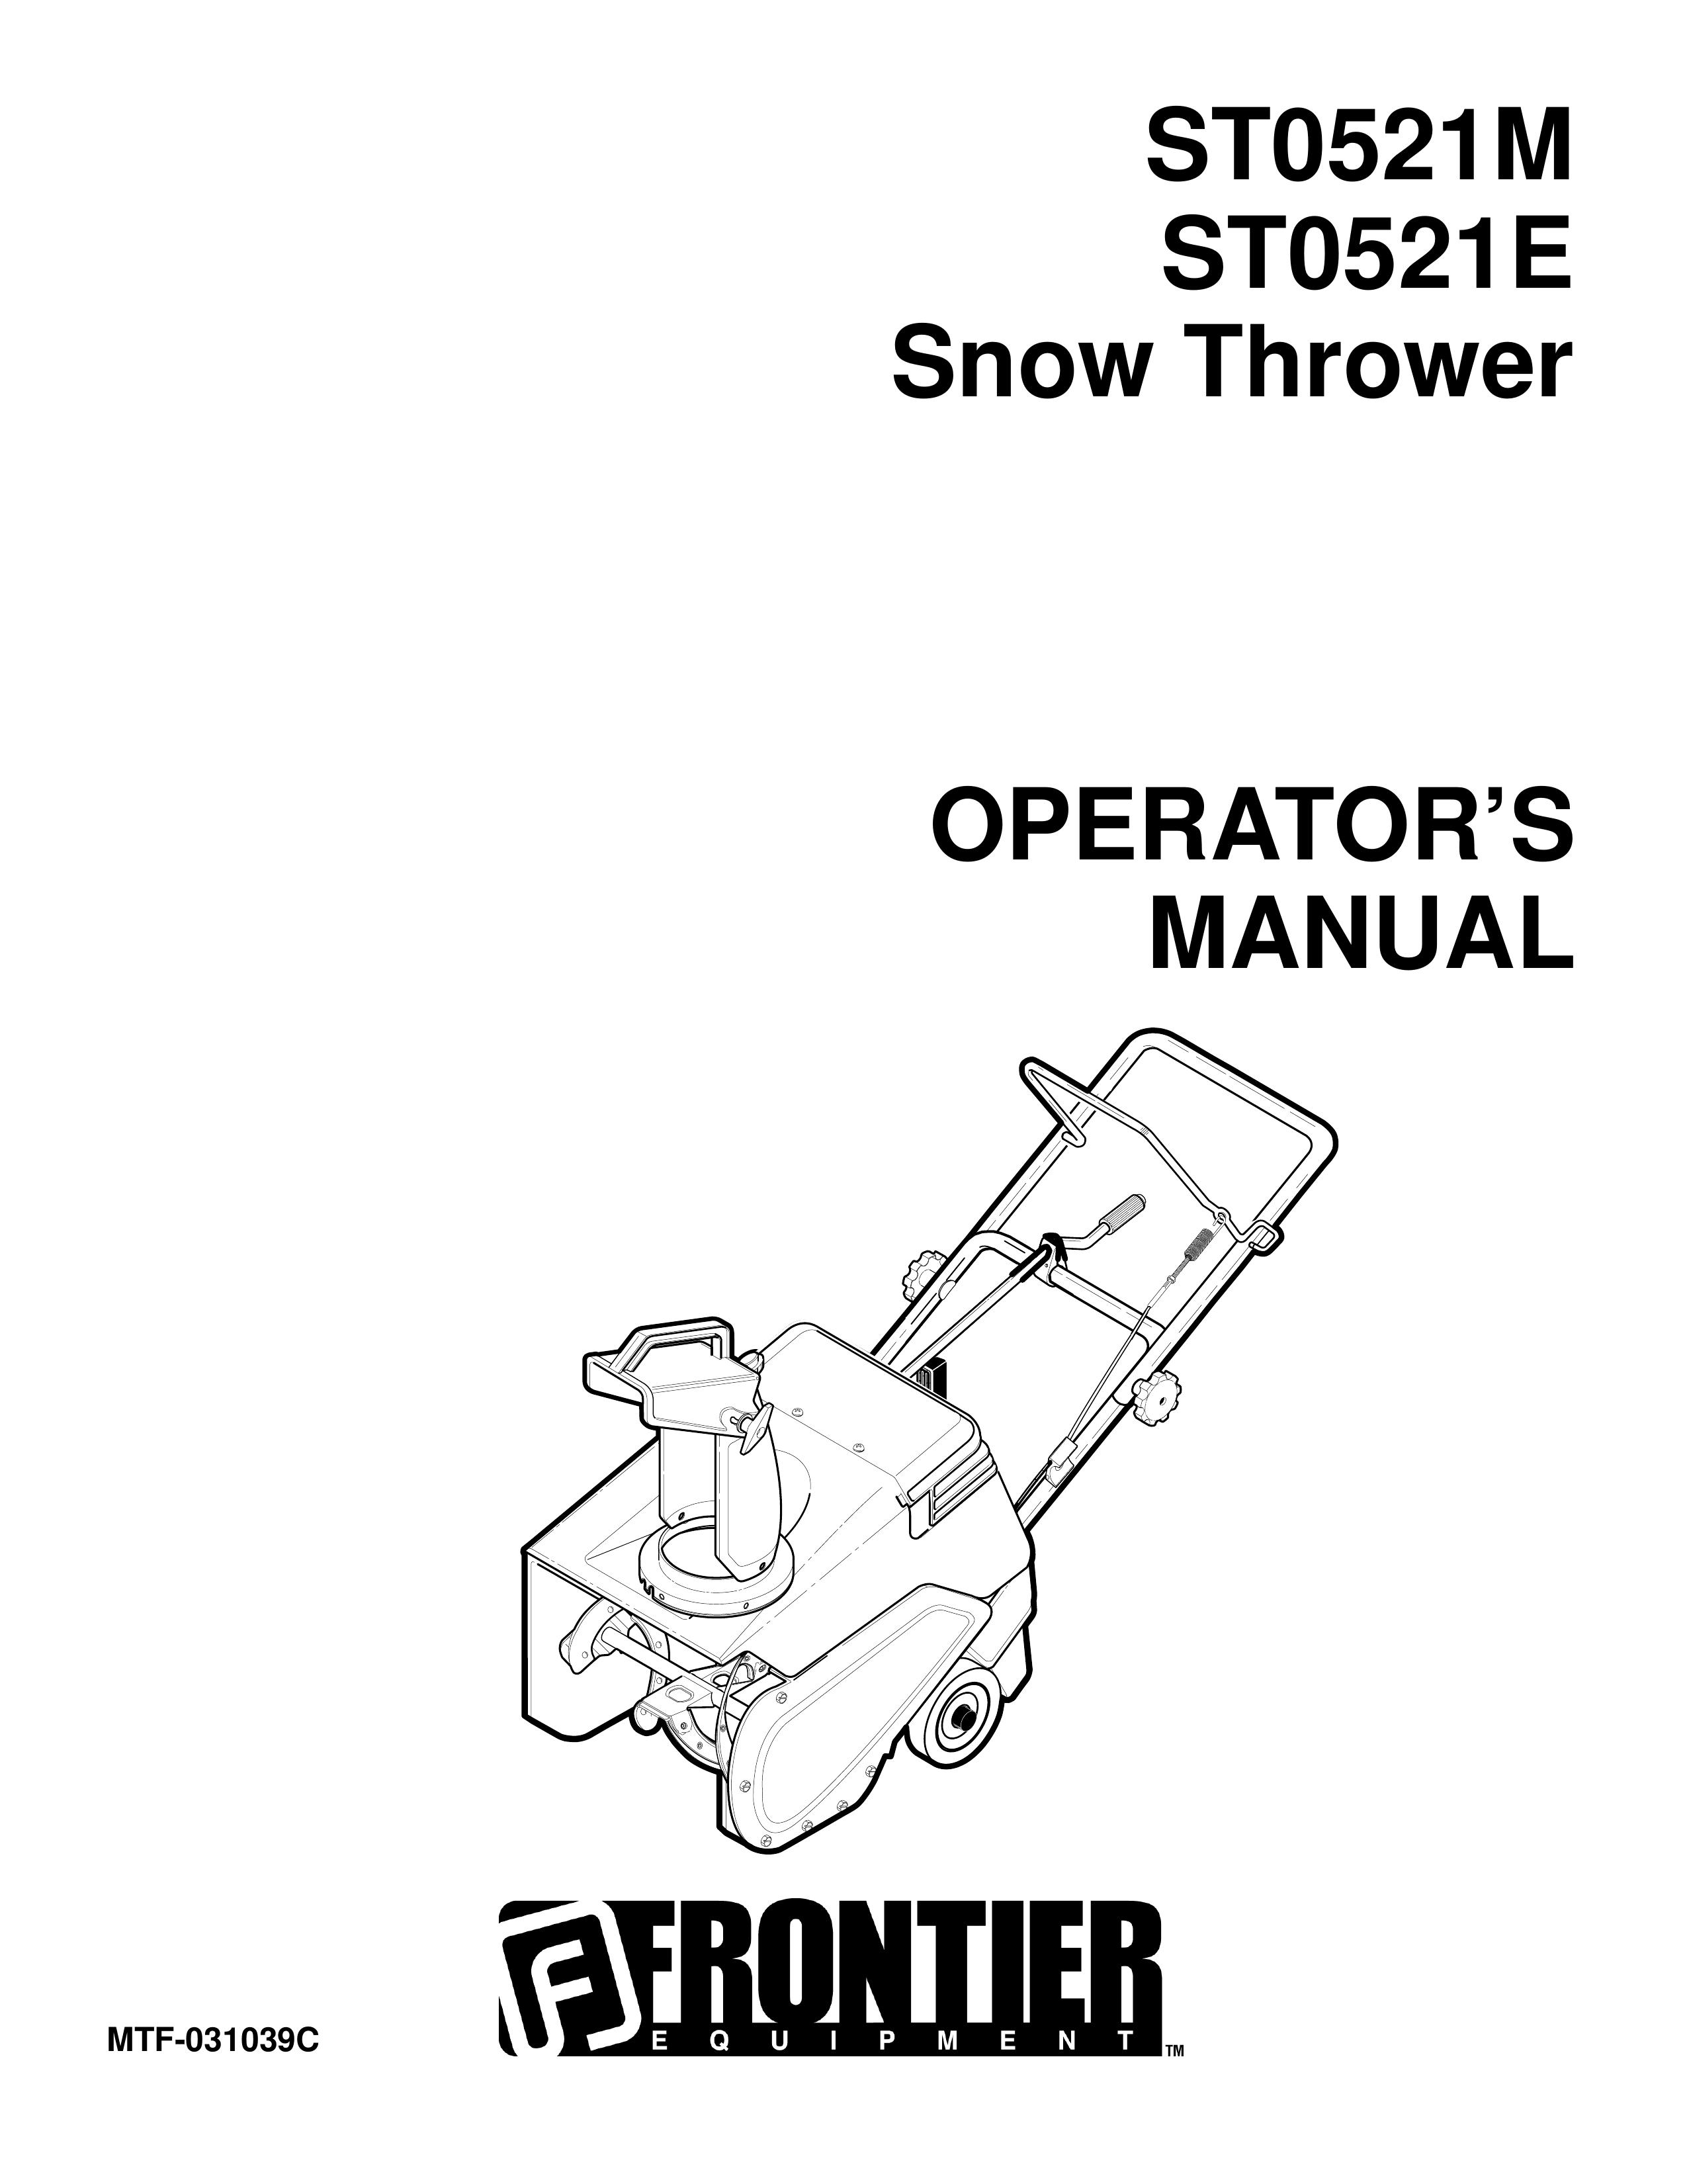 John Deere ST0521E Snow Blower User Manual